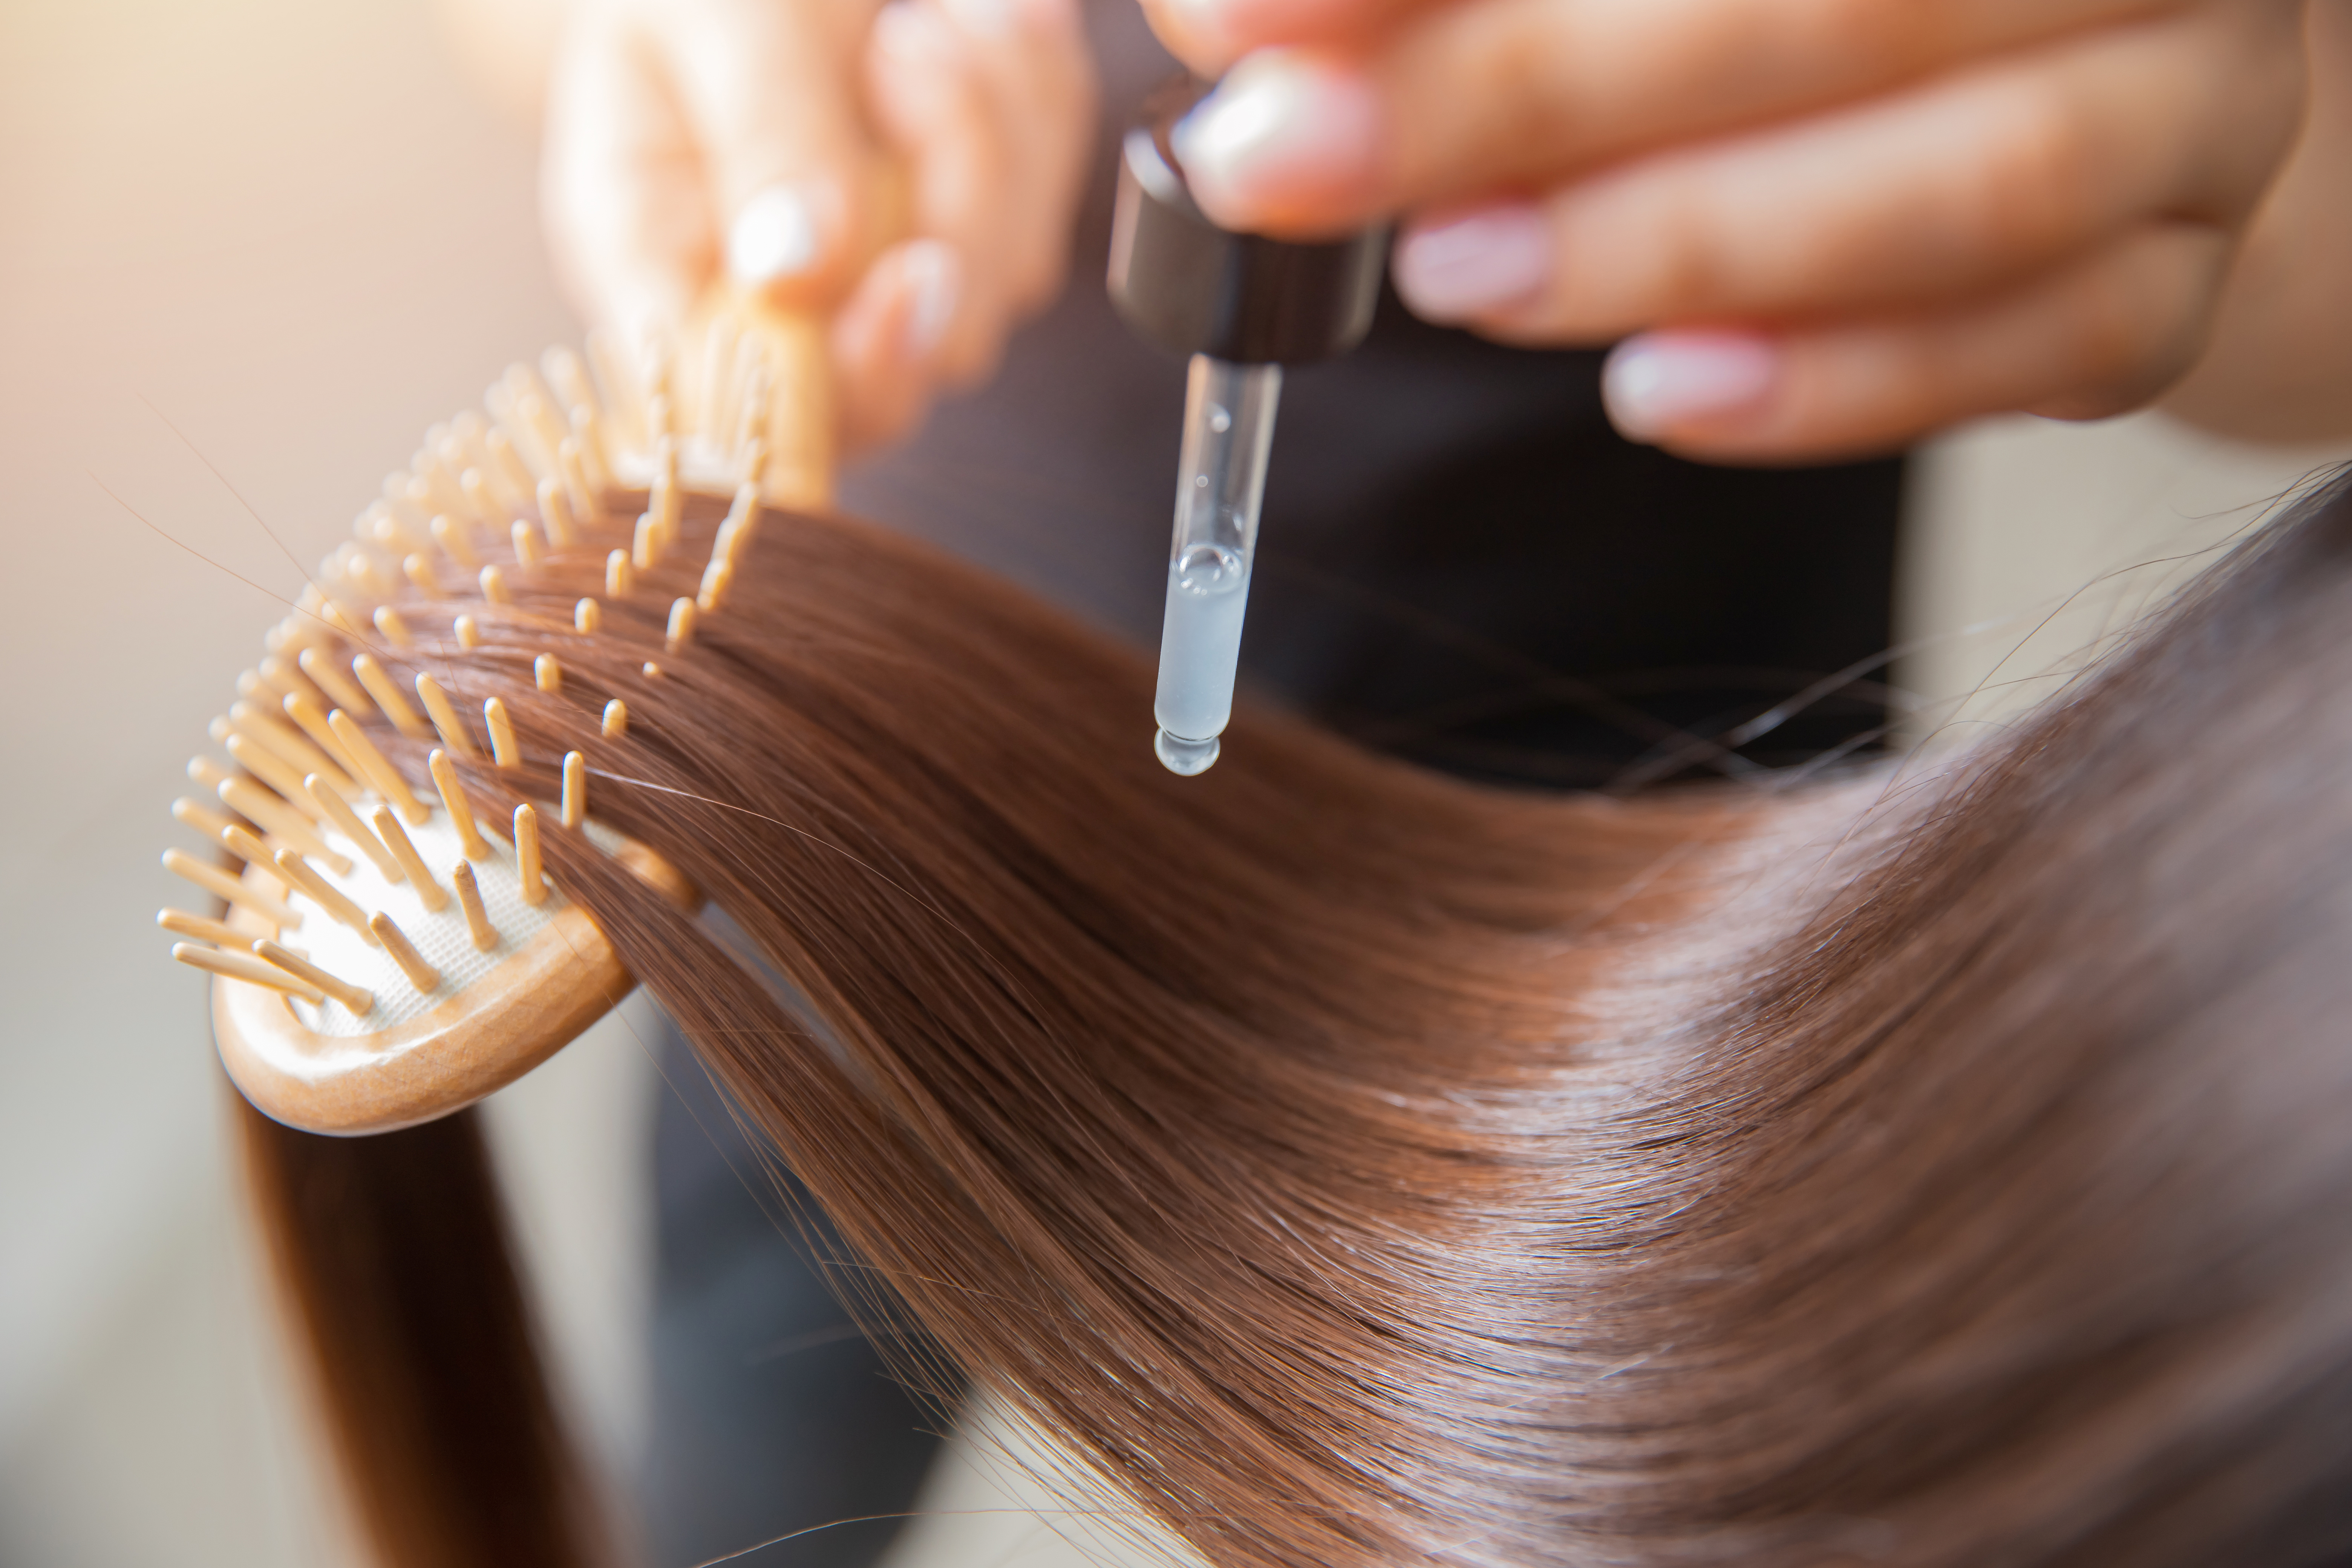 Mas, afinal, como esse produto ajuda o cabelo? Fonte: AdobeStock.